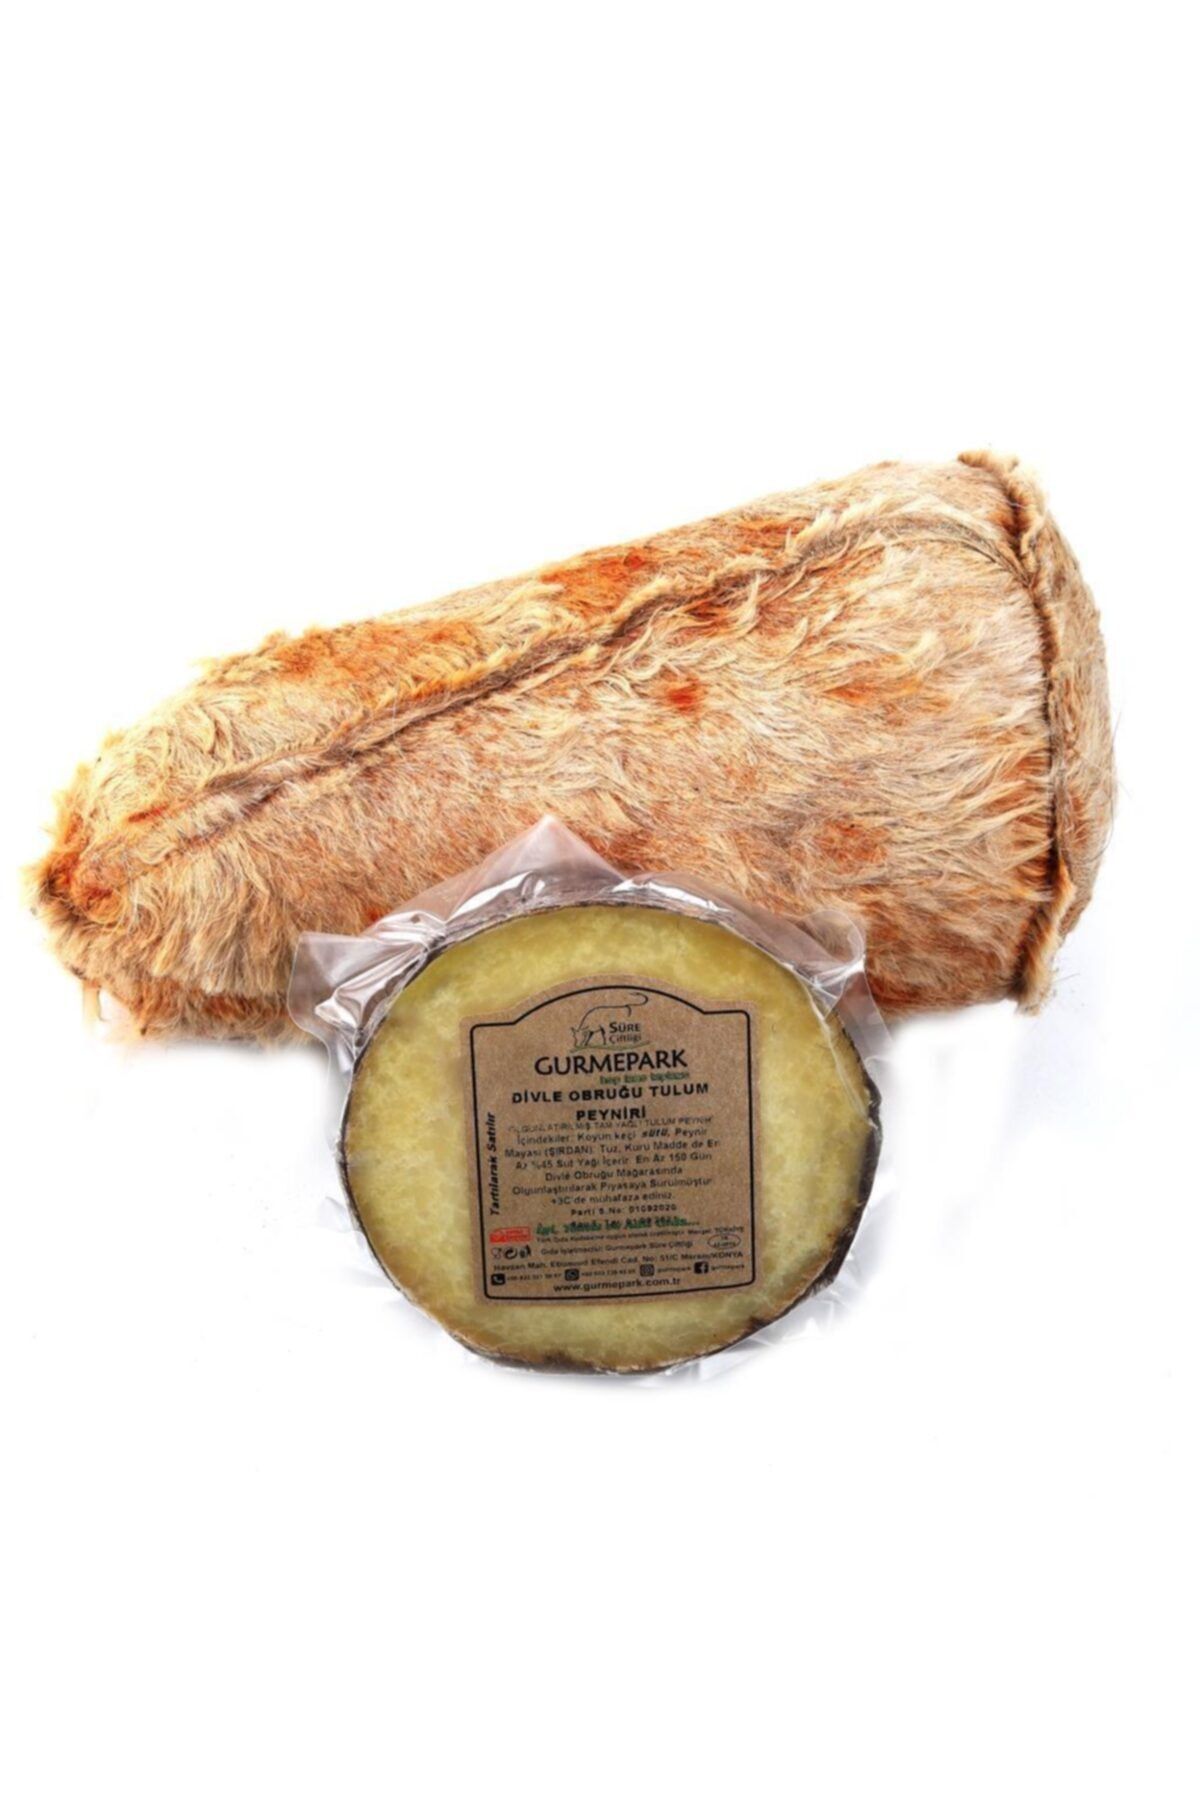 Gurmepark Karaman Divle Obruk Tulum (yeni Sezon) Koyun Keçi Peyniri 250 Gr Orjinal Sertifikalı